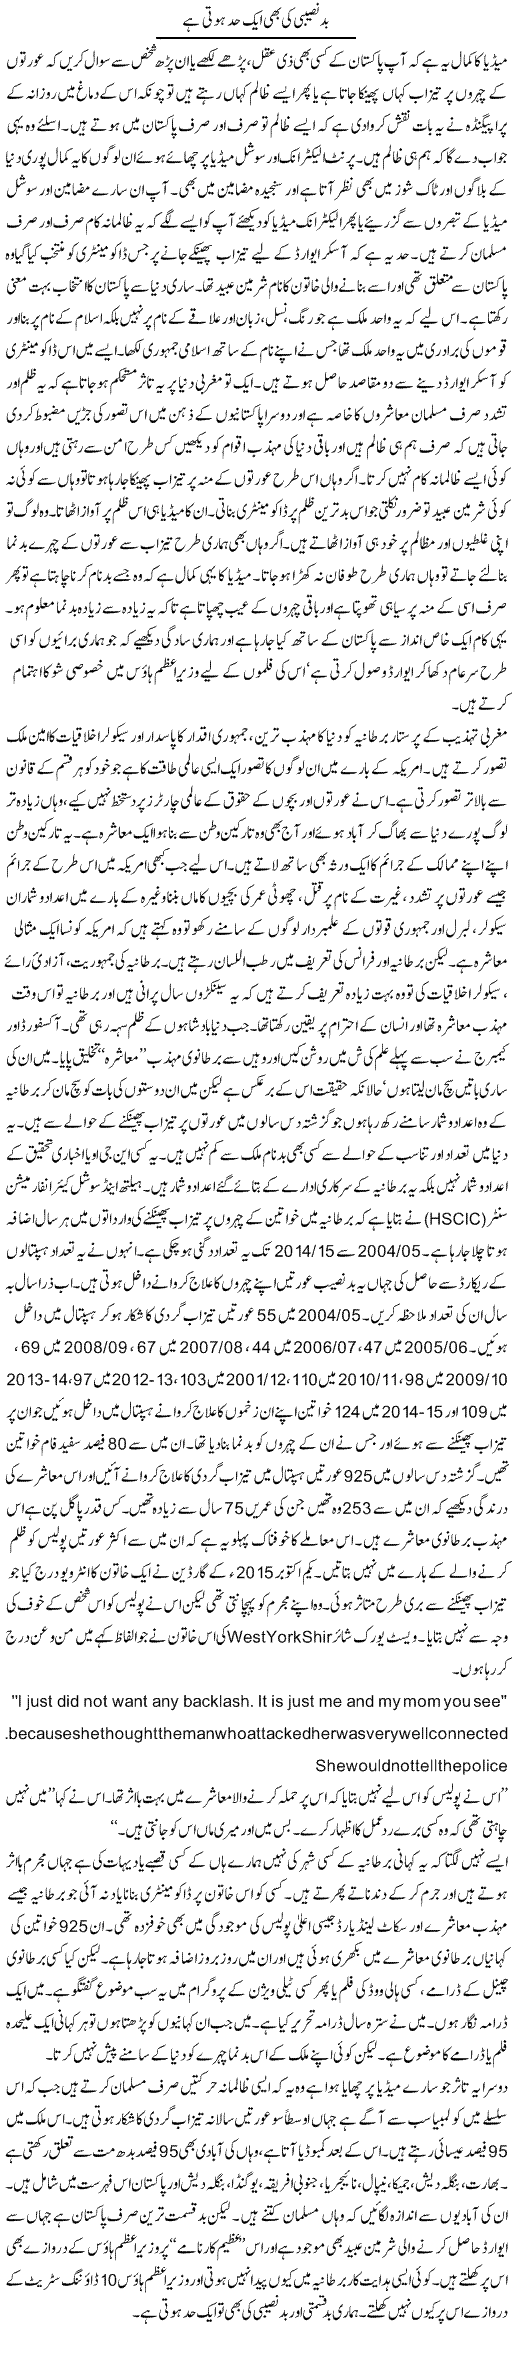 Bad Naseebi Ki Bhi Aik Had Hoti Hai | Orya Maqbool Jan | Daily Urdu Columns